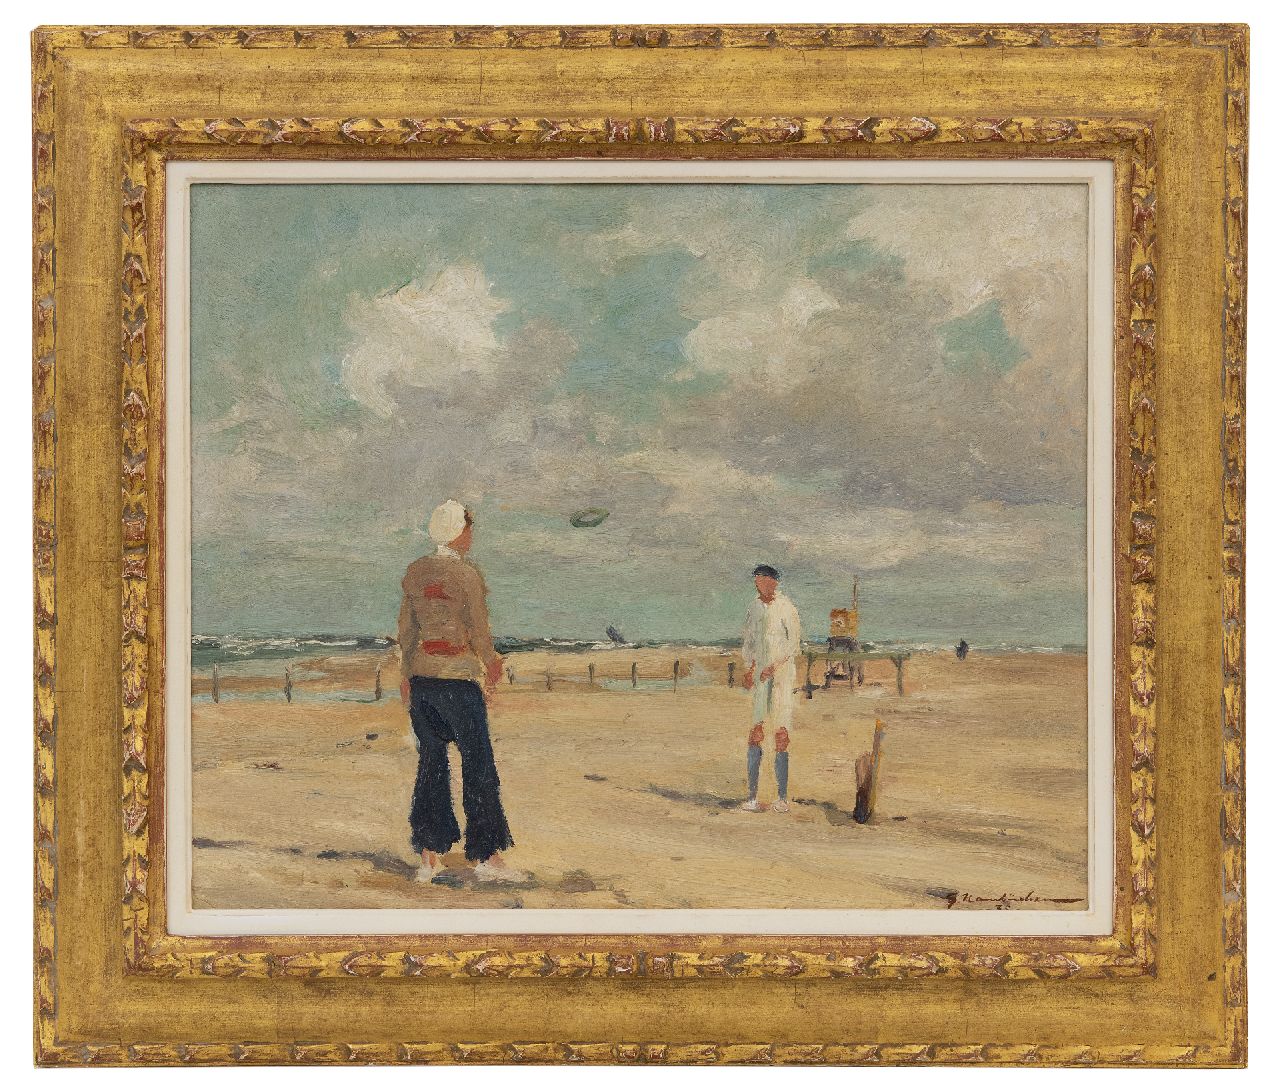 Hambüchen G.  | Georg Hambüchen | Schilderijen te koop aangeboden | Ringgooien op het strand, olieverf op board 37,7 x 46,3 cm, gesigneerd rechtsonder en gedateerd '35